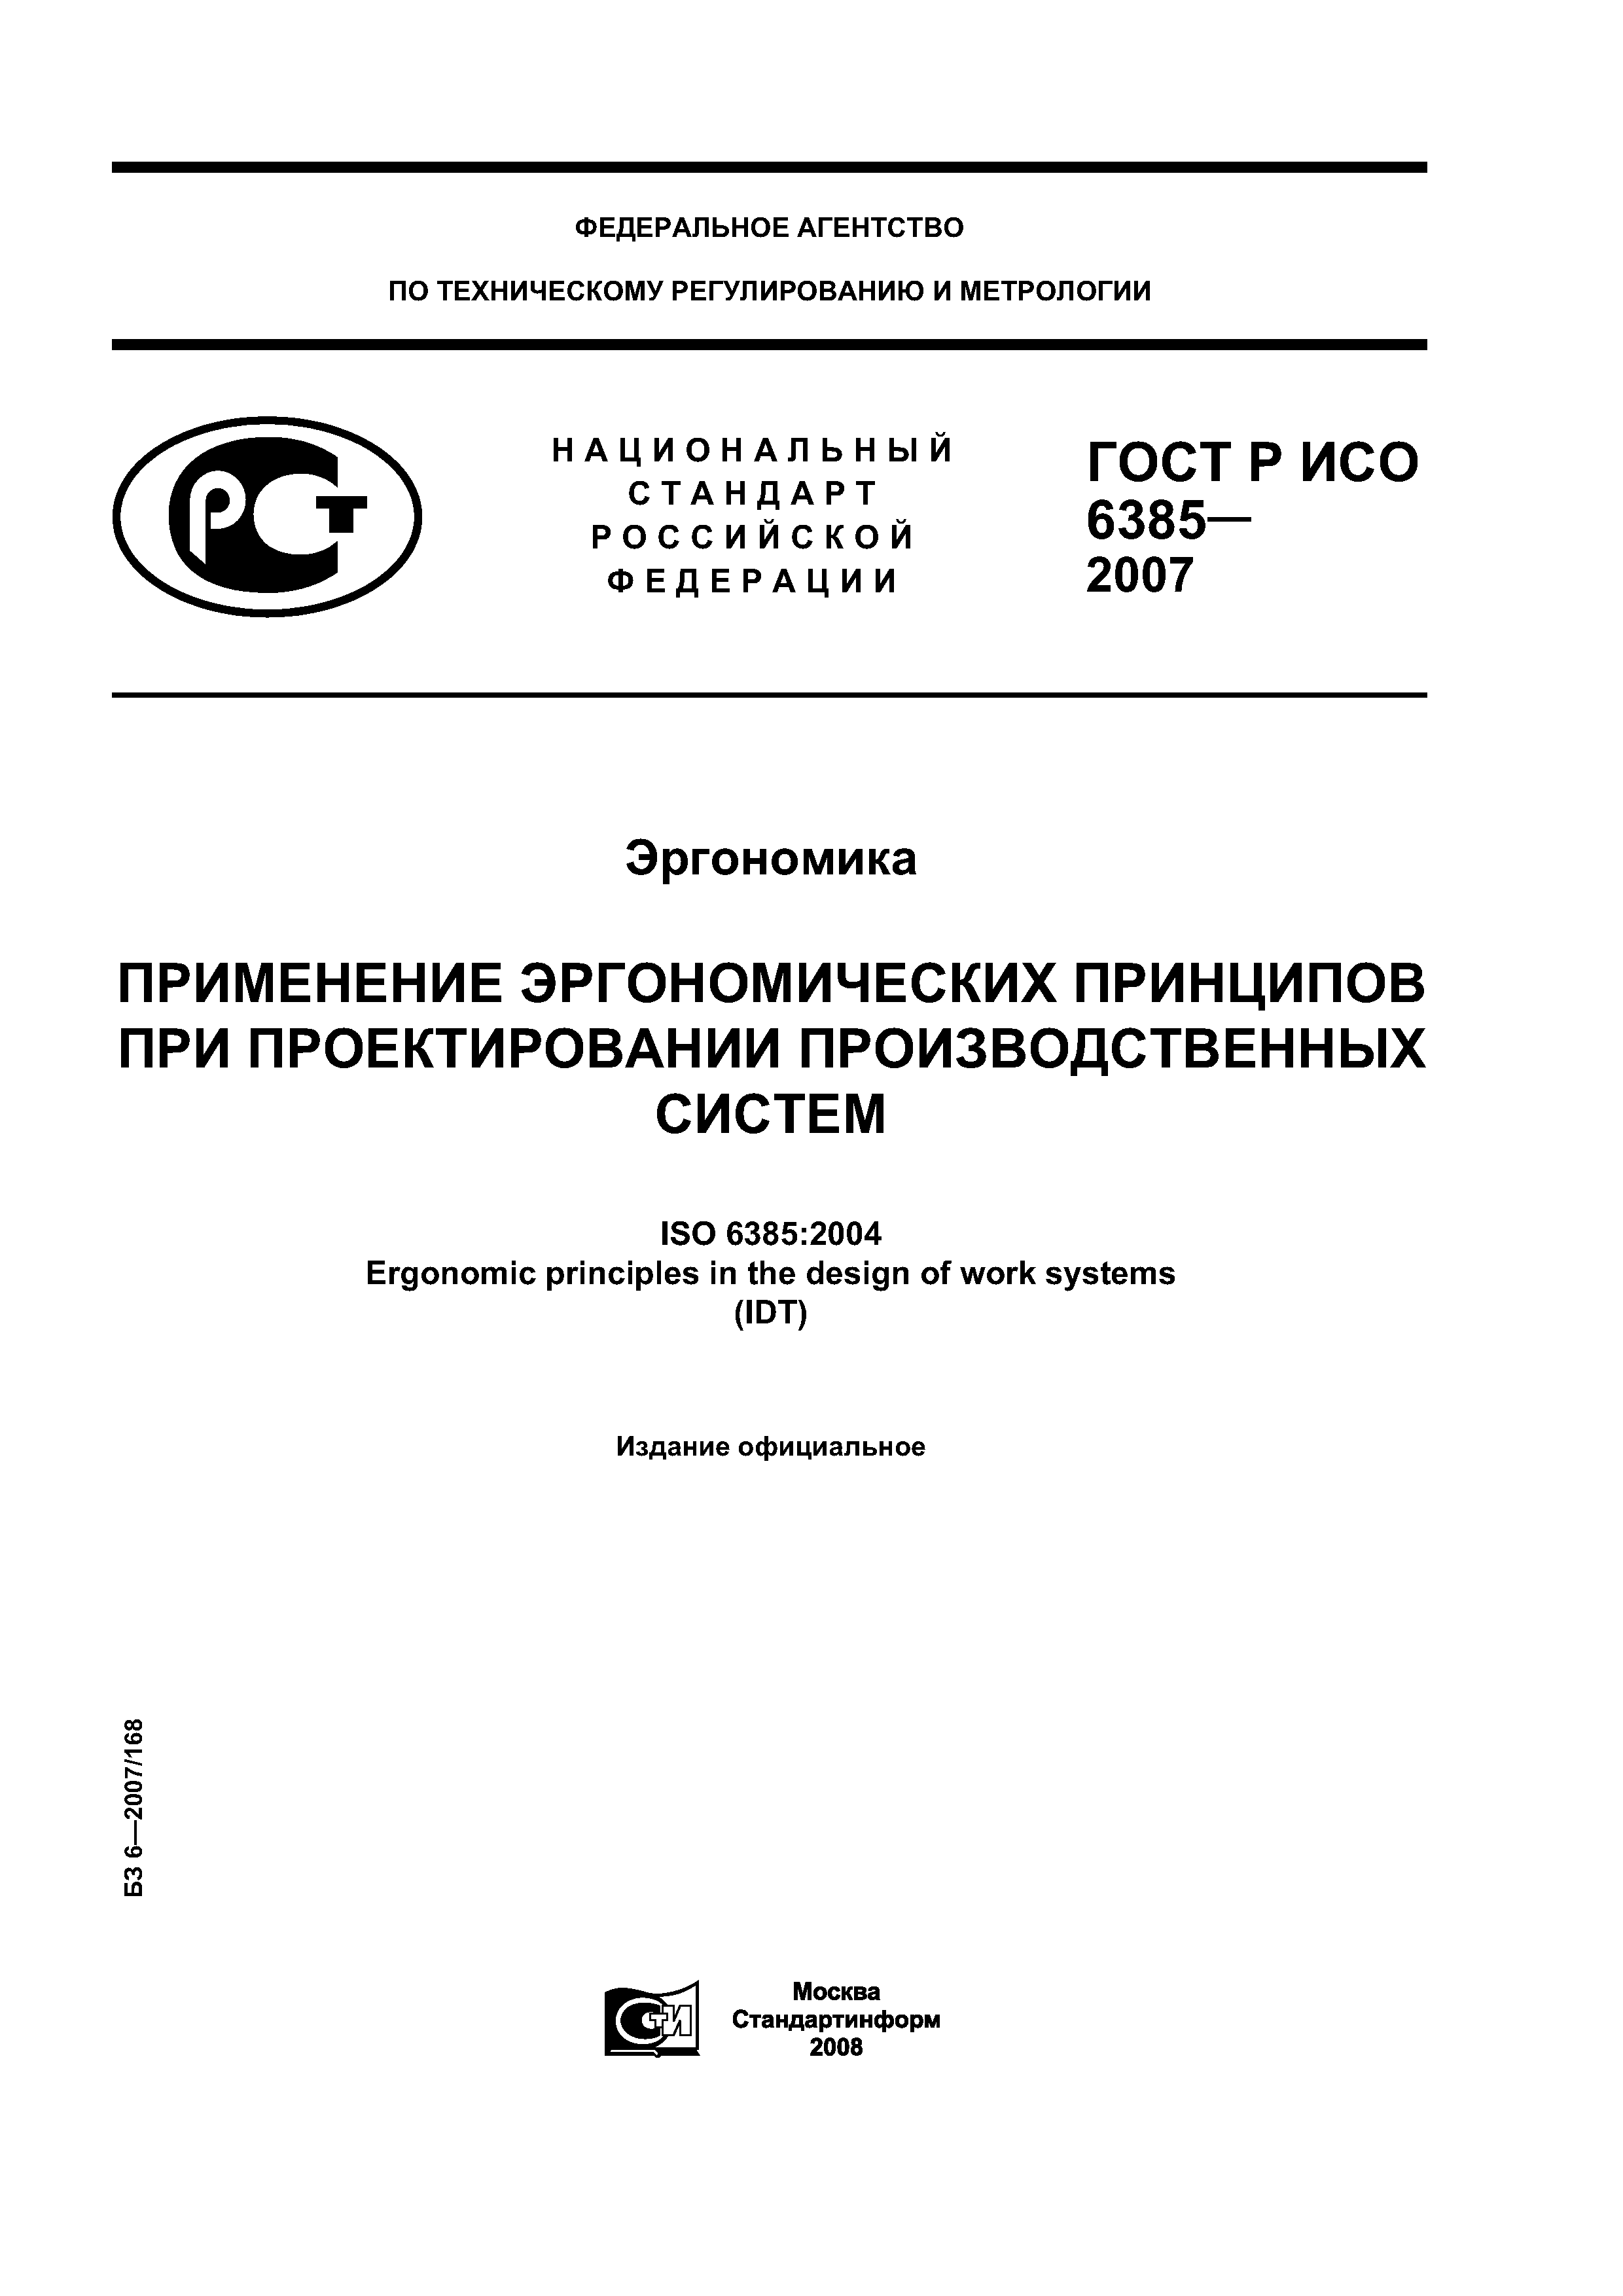 ГОСТ Р ИСО 6385-2007